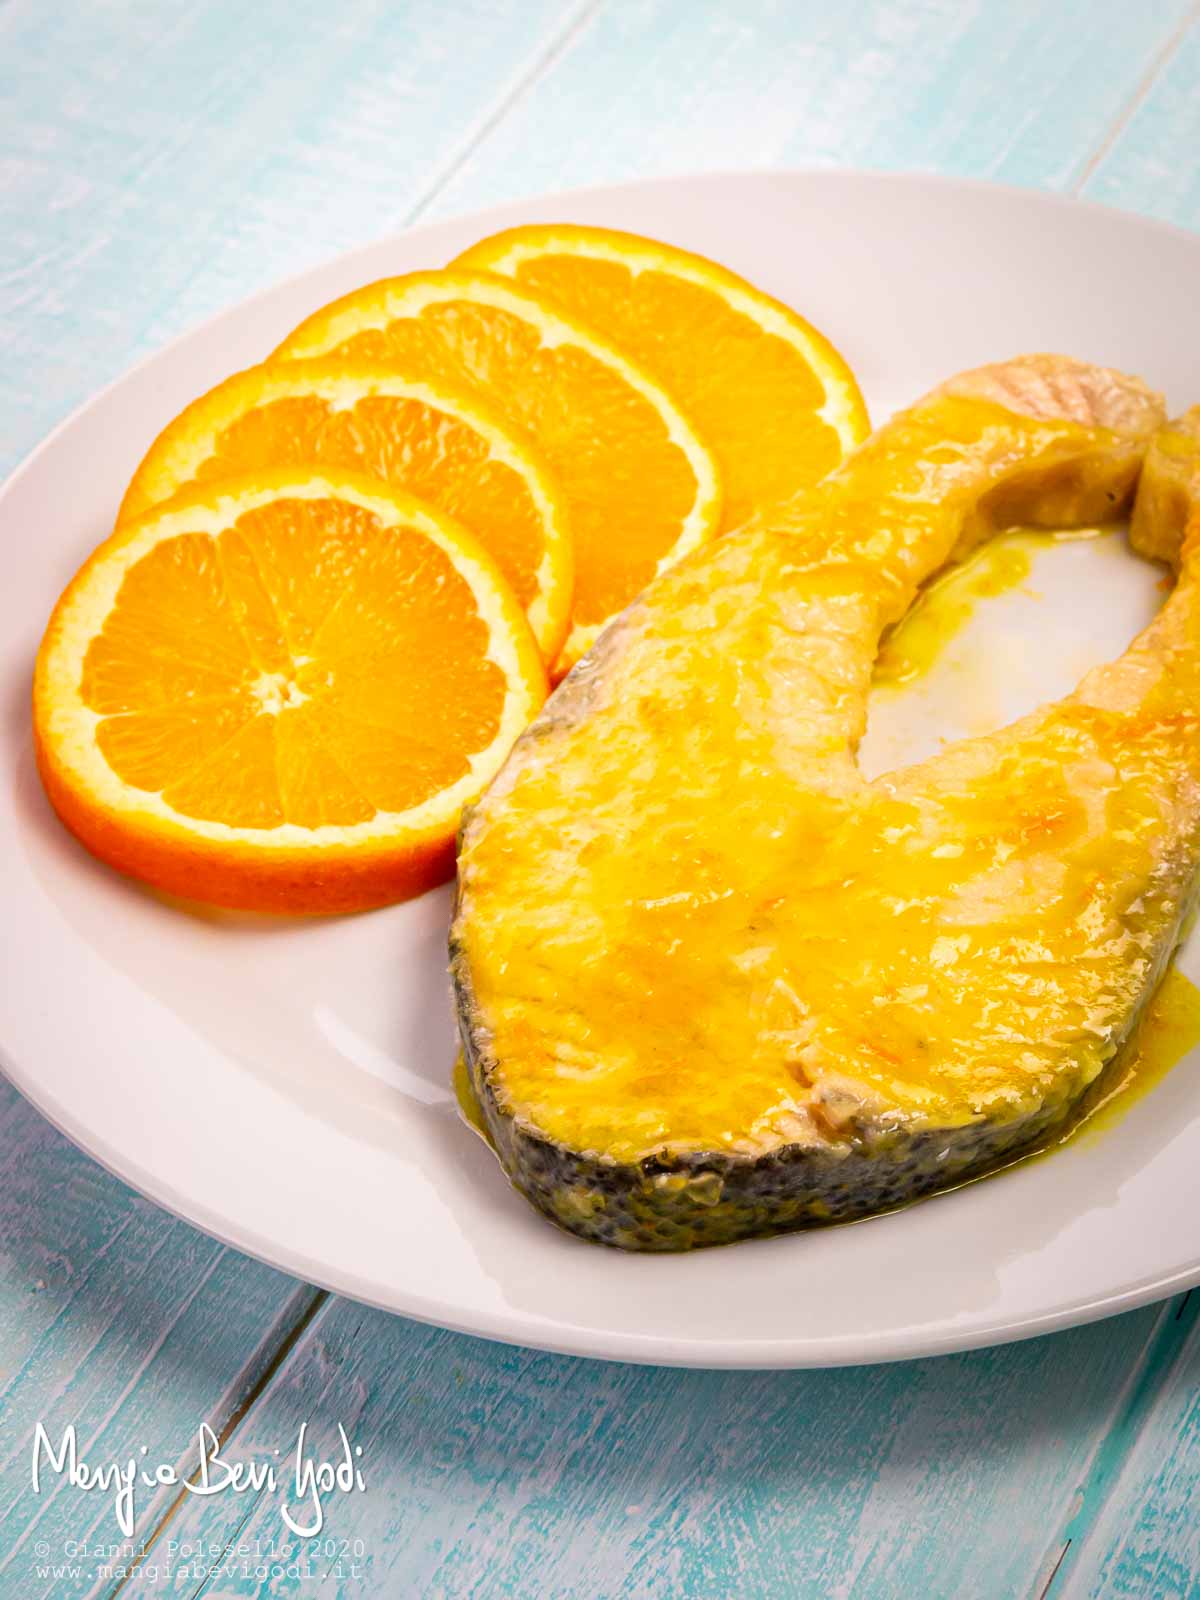 Salmone in padella all'arancia